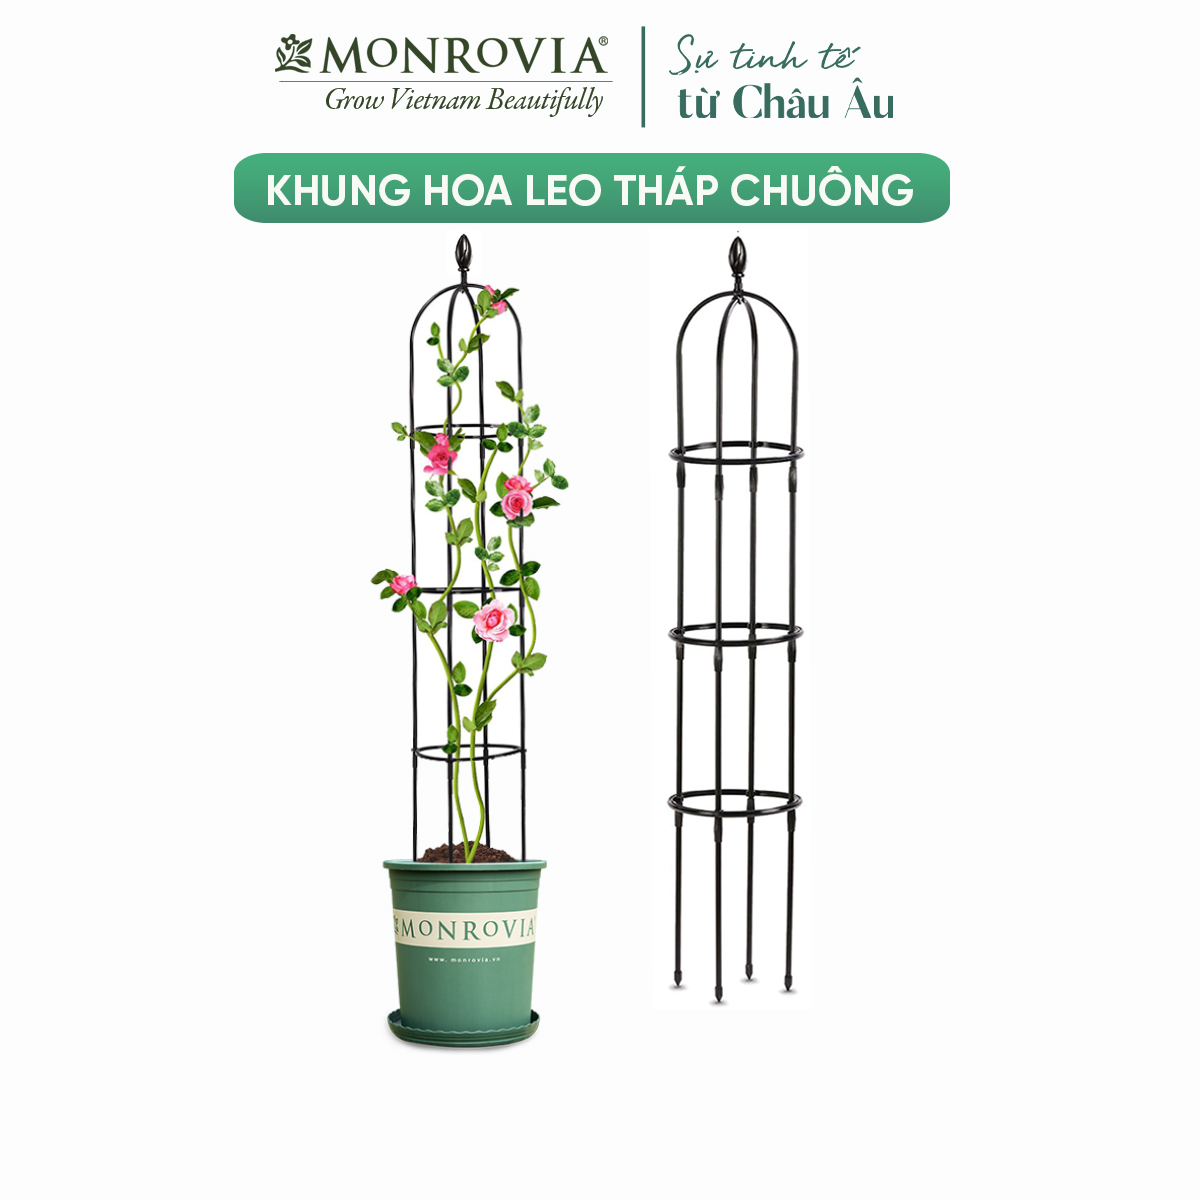 Khung trồng hoa hồng MONROVIA, giàn leo hoa hồng,ống thép bọc nhựa